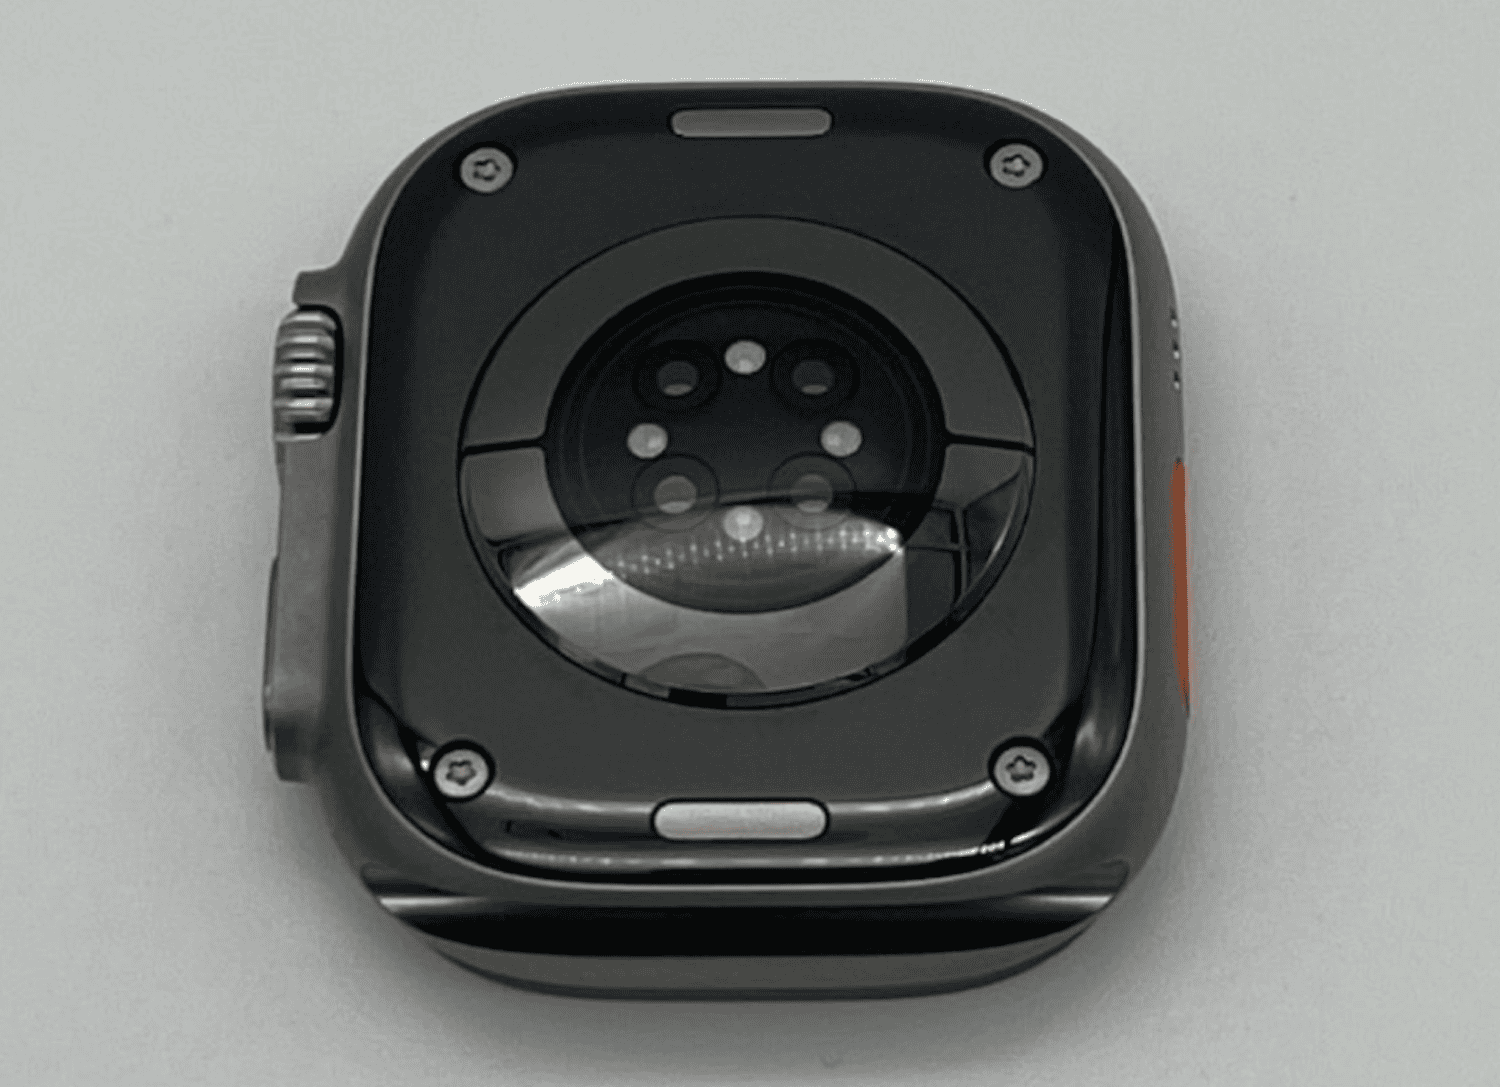 Apple Watch Ultra had oorspronkelijk mogelijk zwarte keramische achterkant